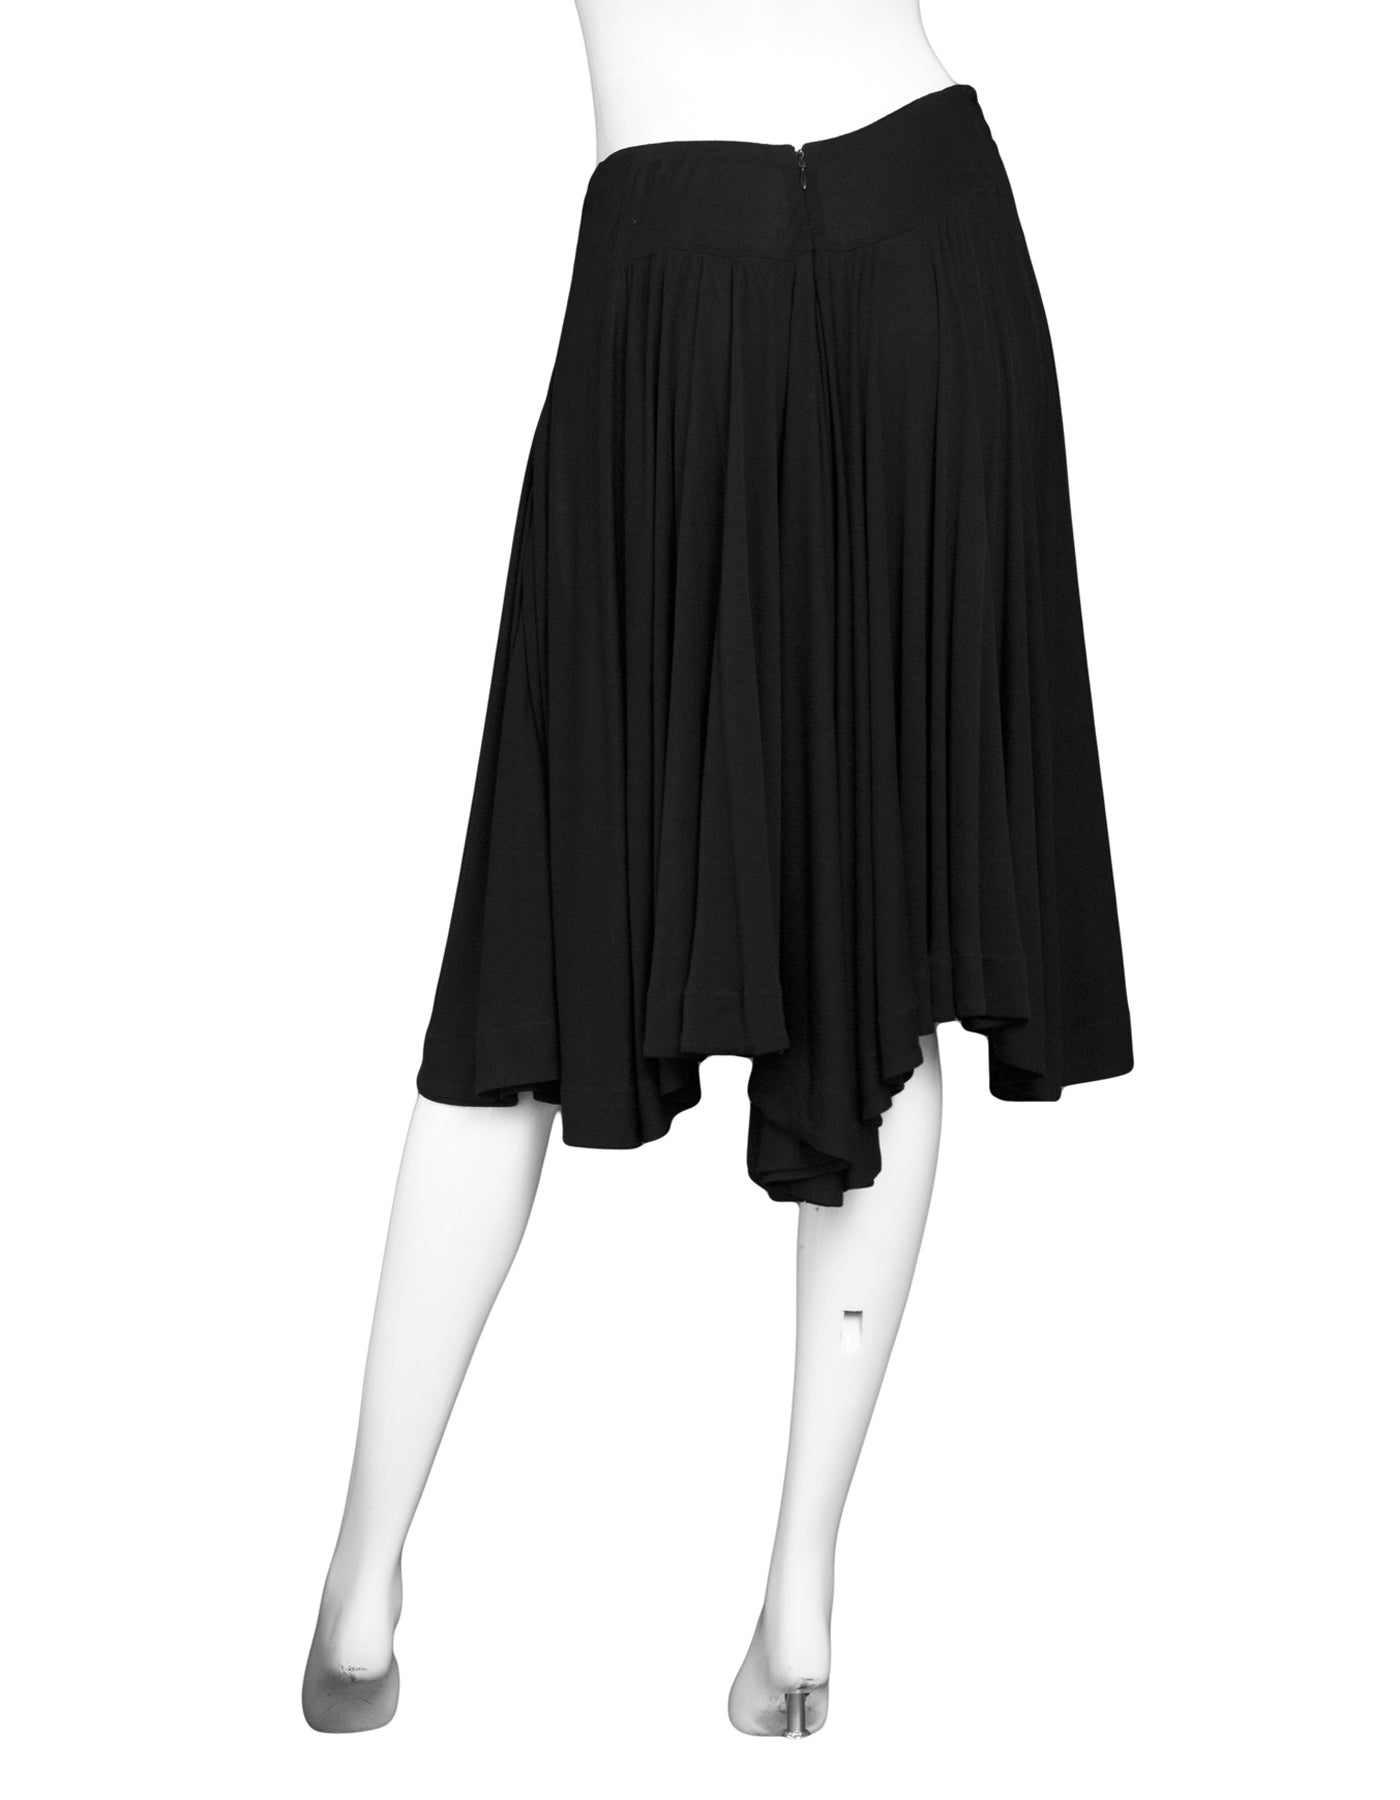 Alaia Black Skirt Sz FR40